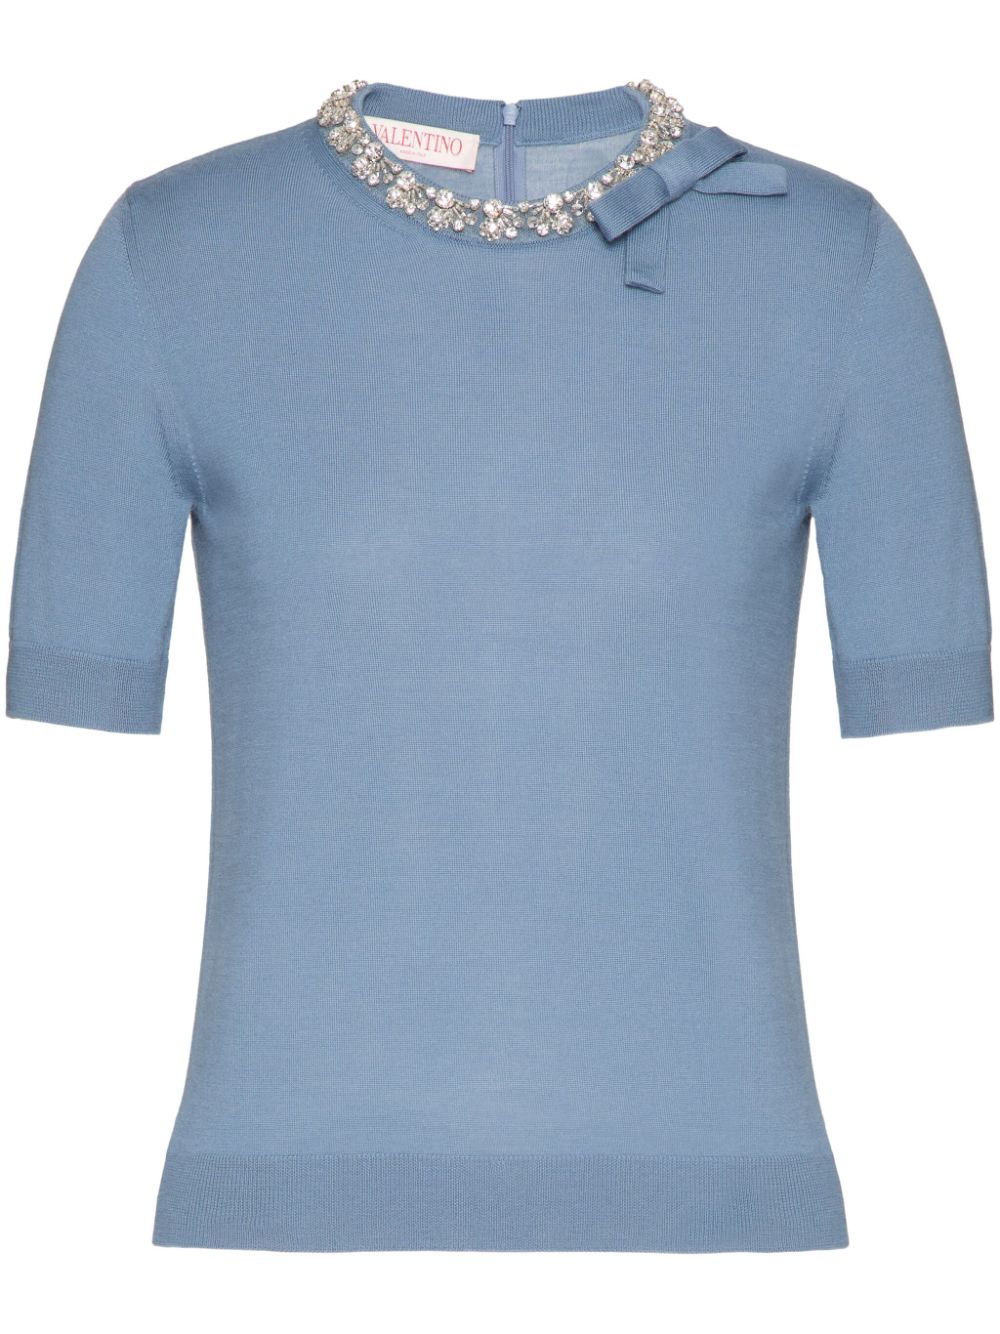 Valentino Garavani Fein gestricktes T-Shirt mit Kristallen - Blau von Valentino Garavani